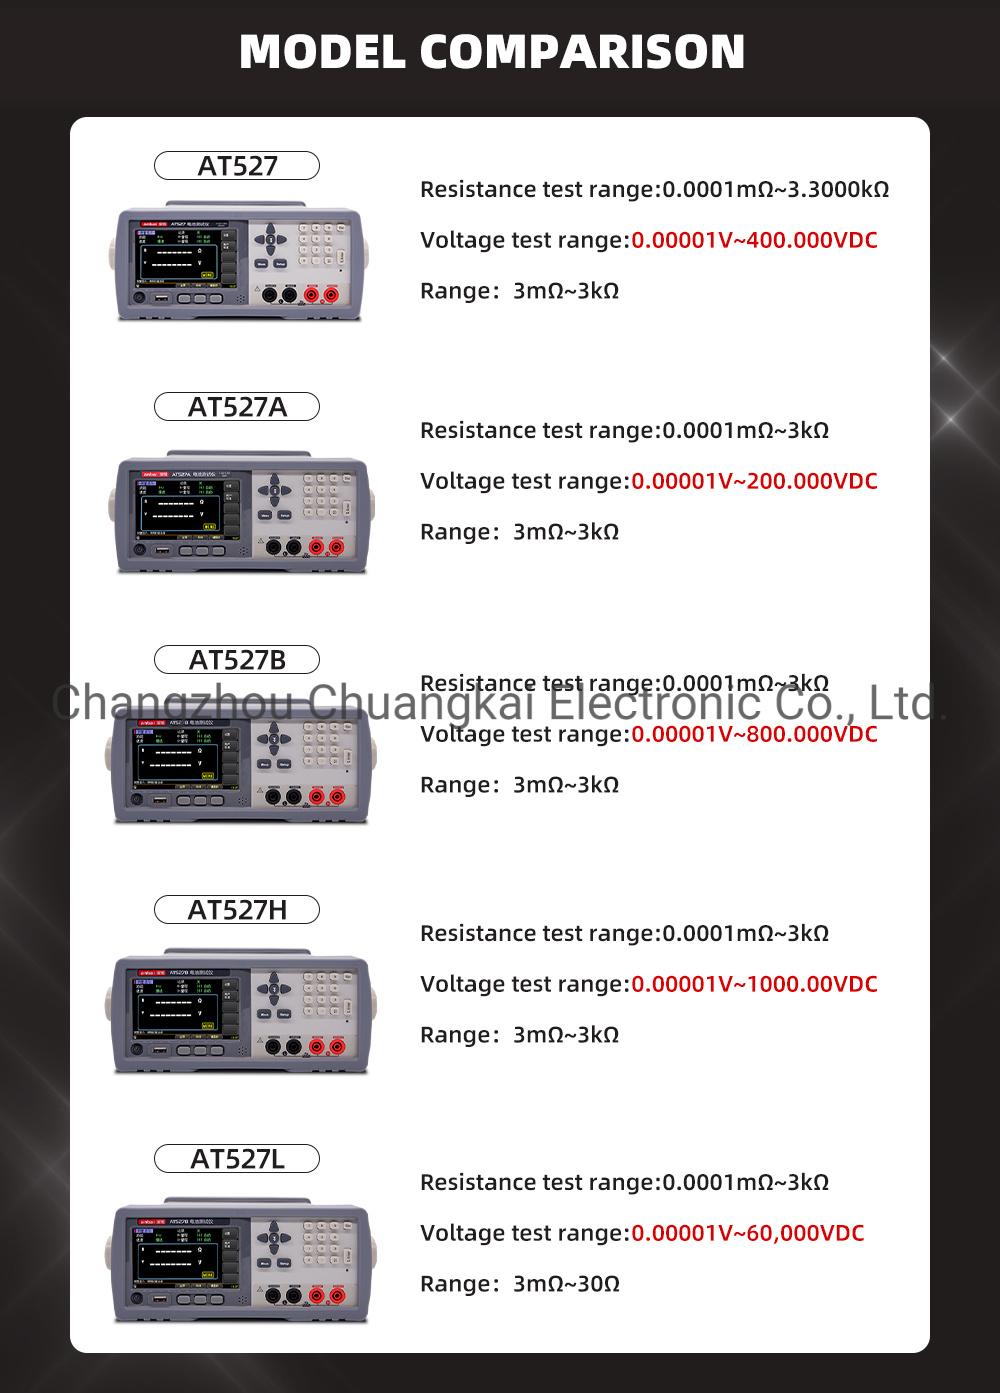 At527h Battery Internal Resistance Meter Tester Voltage Range 0.00001V~1000.000VDC